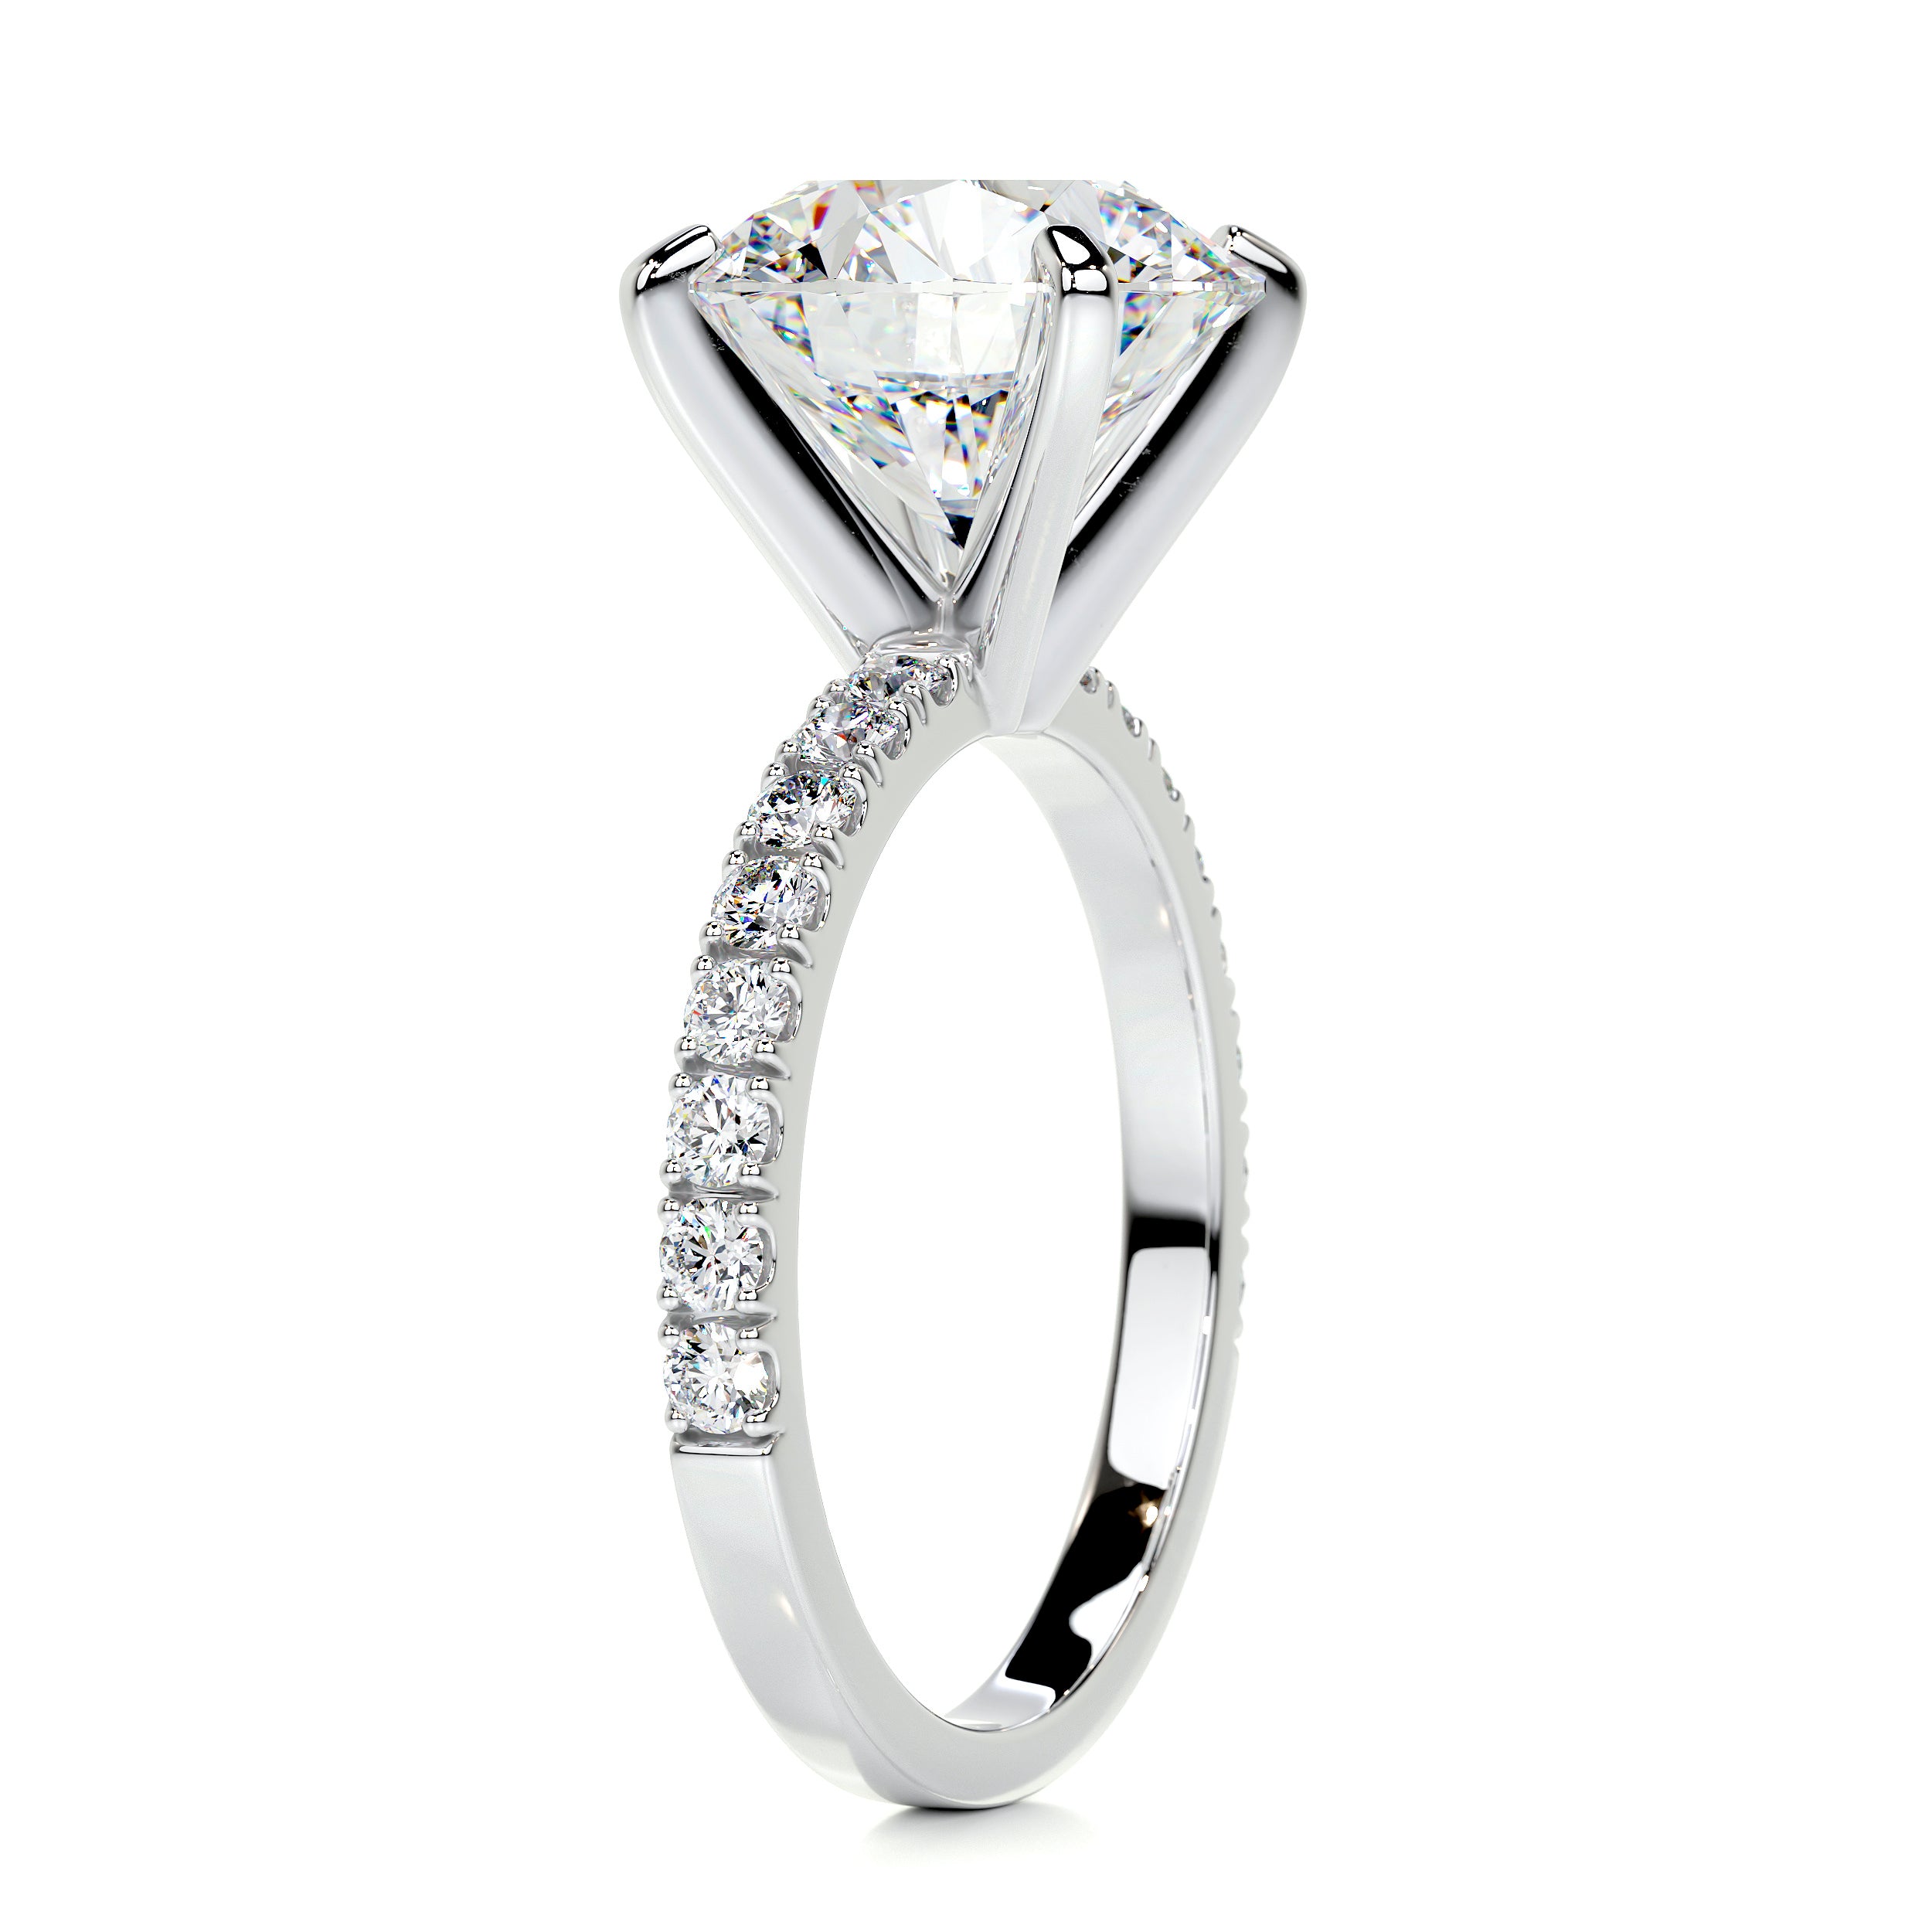 Alison Moissanite & Diamonds Ring   (5.5 Carat) -Platinum